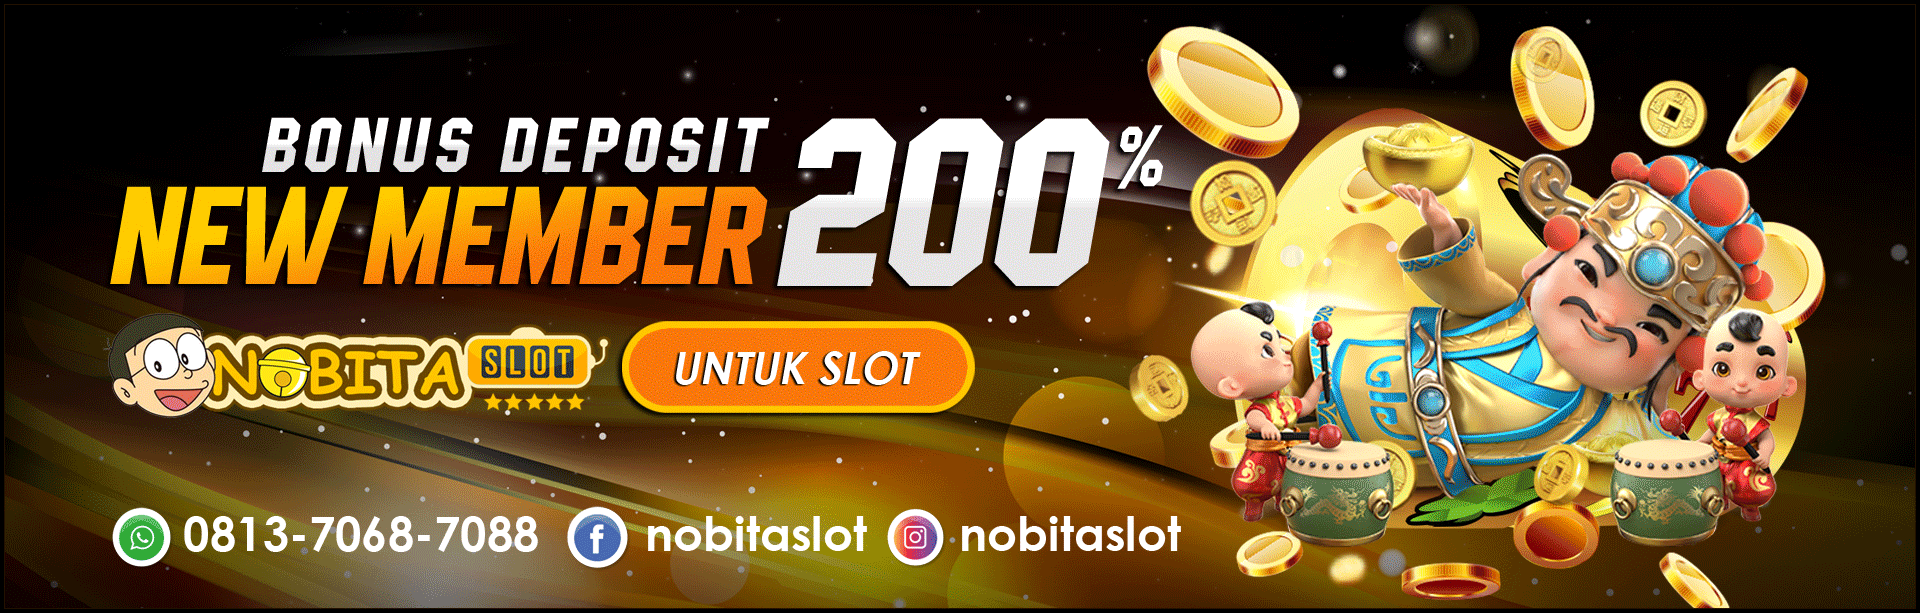 Daftar Nobitaslot promo bonus new member 200%